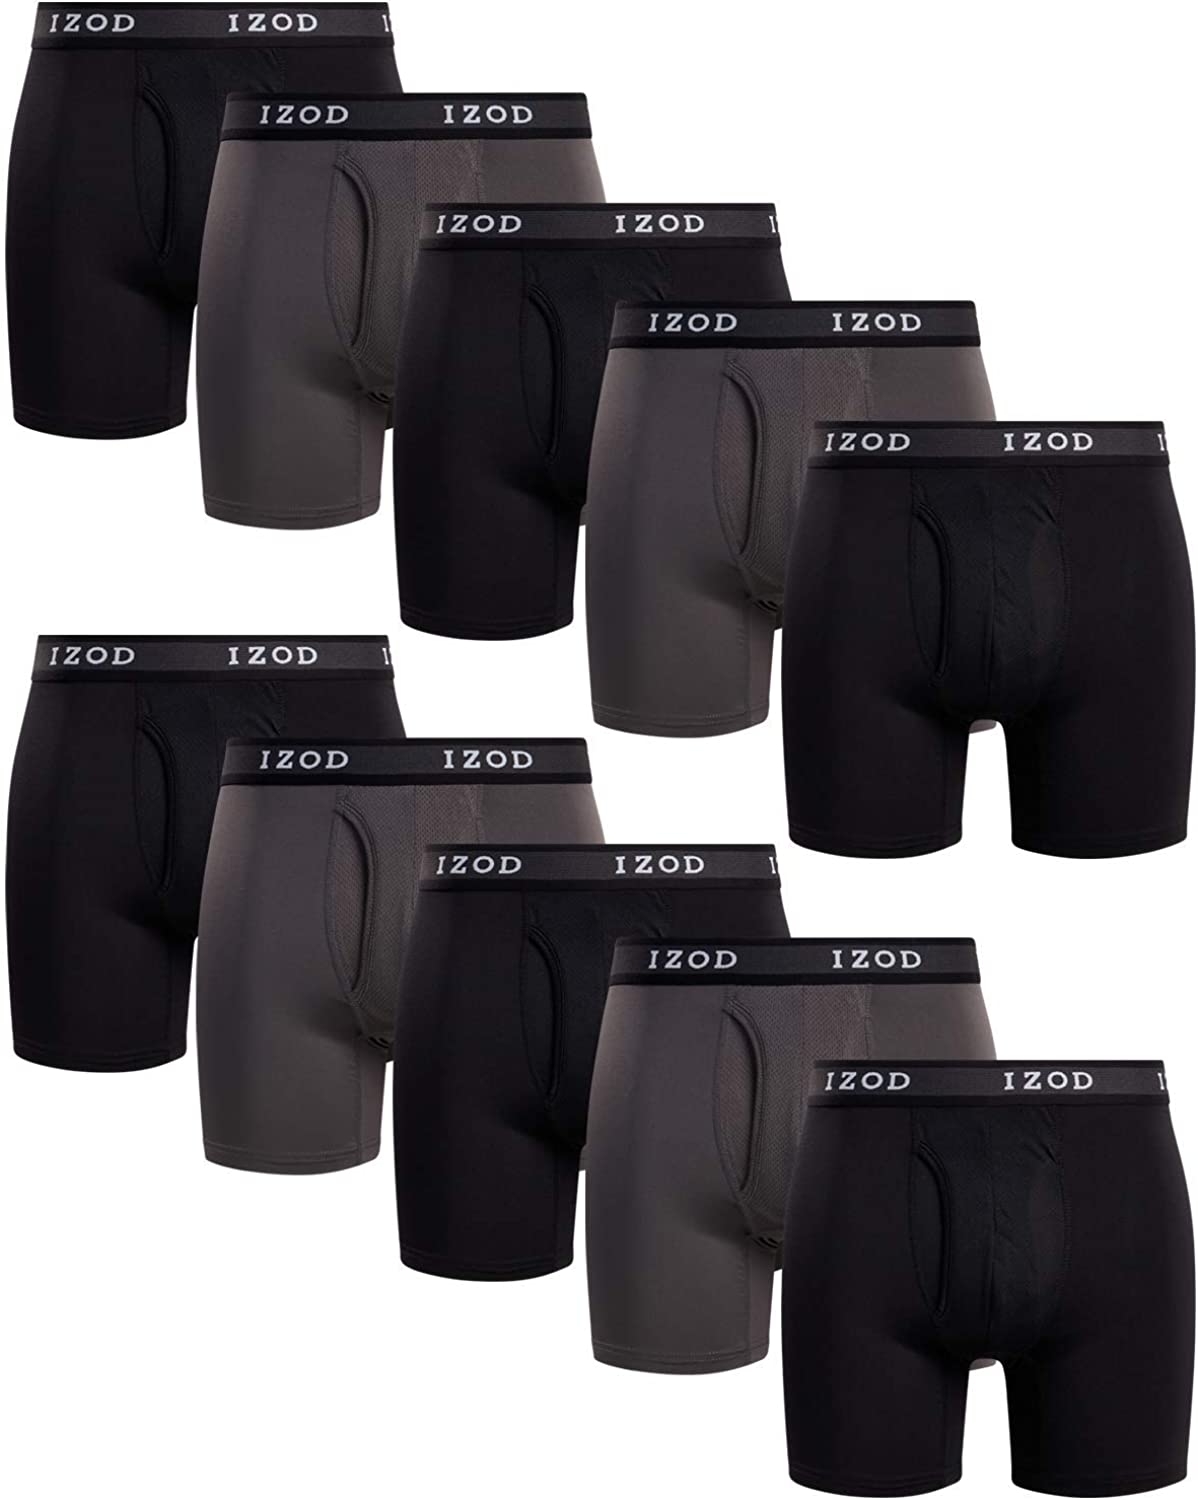 IZOD Men's Underwear - Performance Boxer Briefs with Mesh